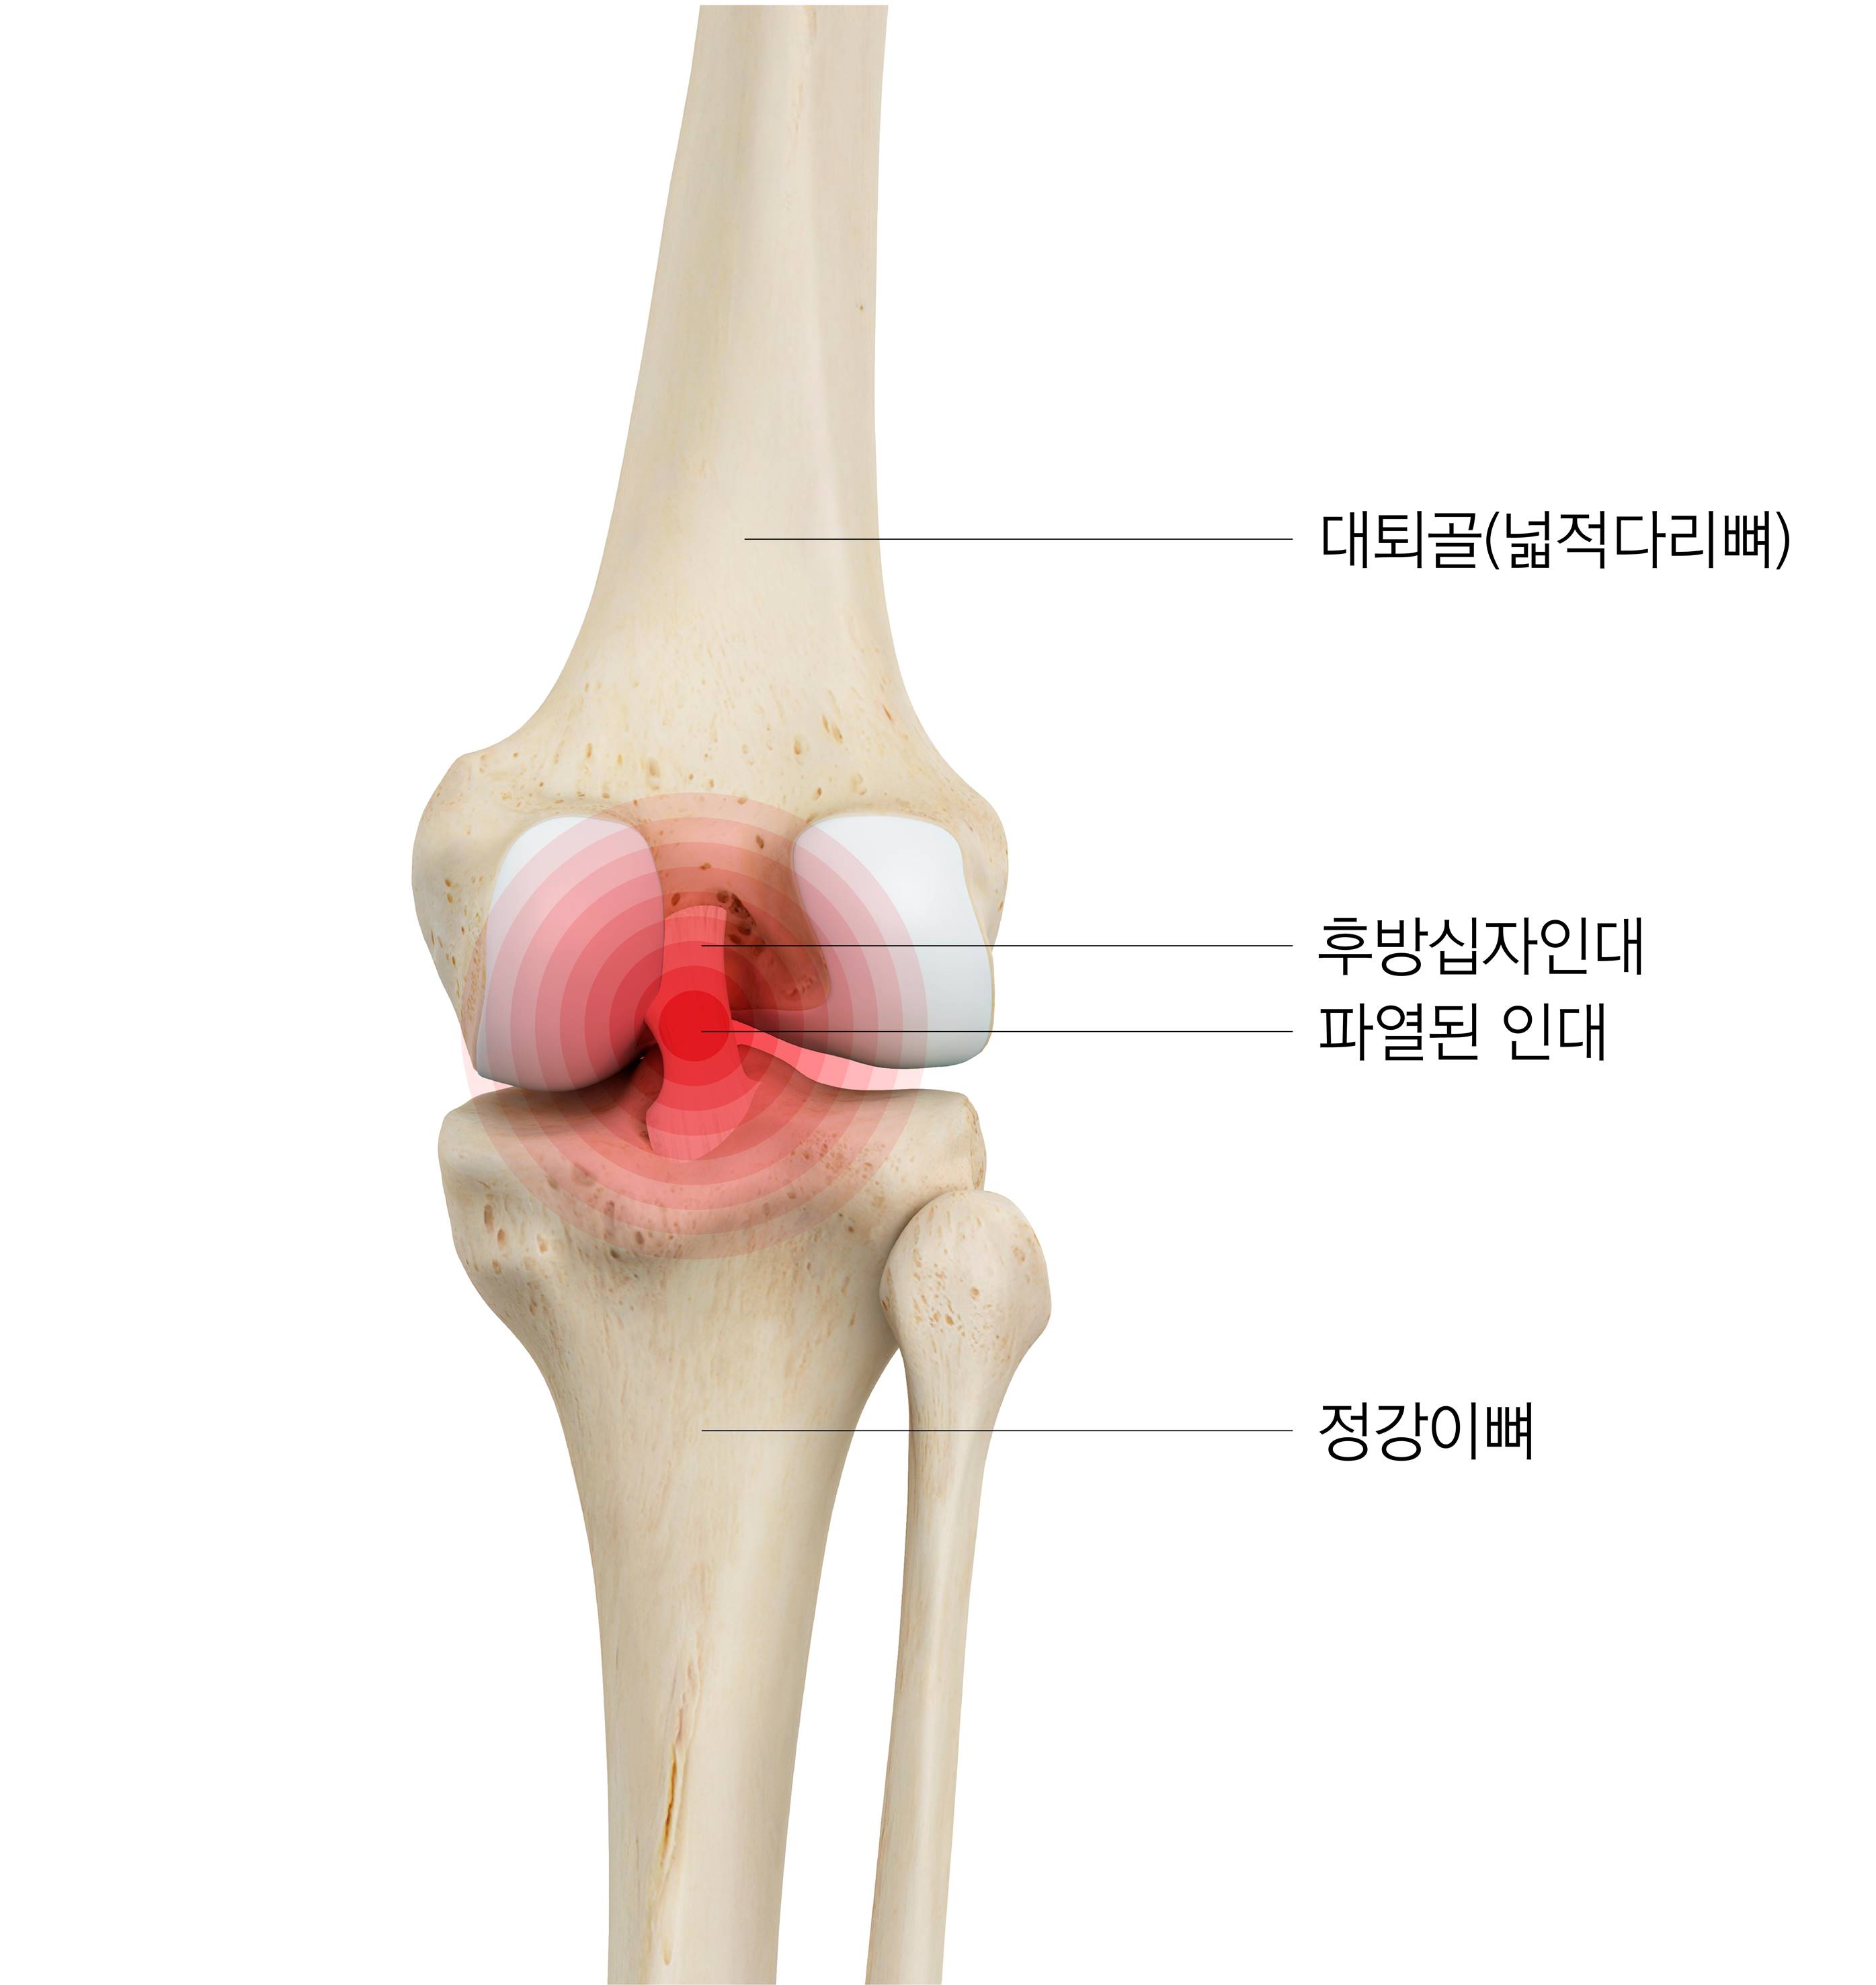 가벼운 무릎 통증 무시 말아야…원인 찾아 치료·관리를 - 중앙일보헬스미디어